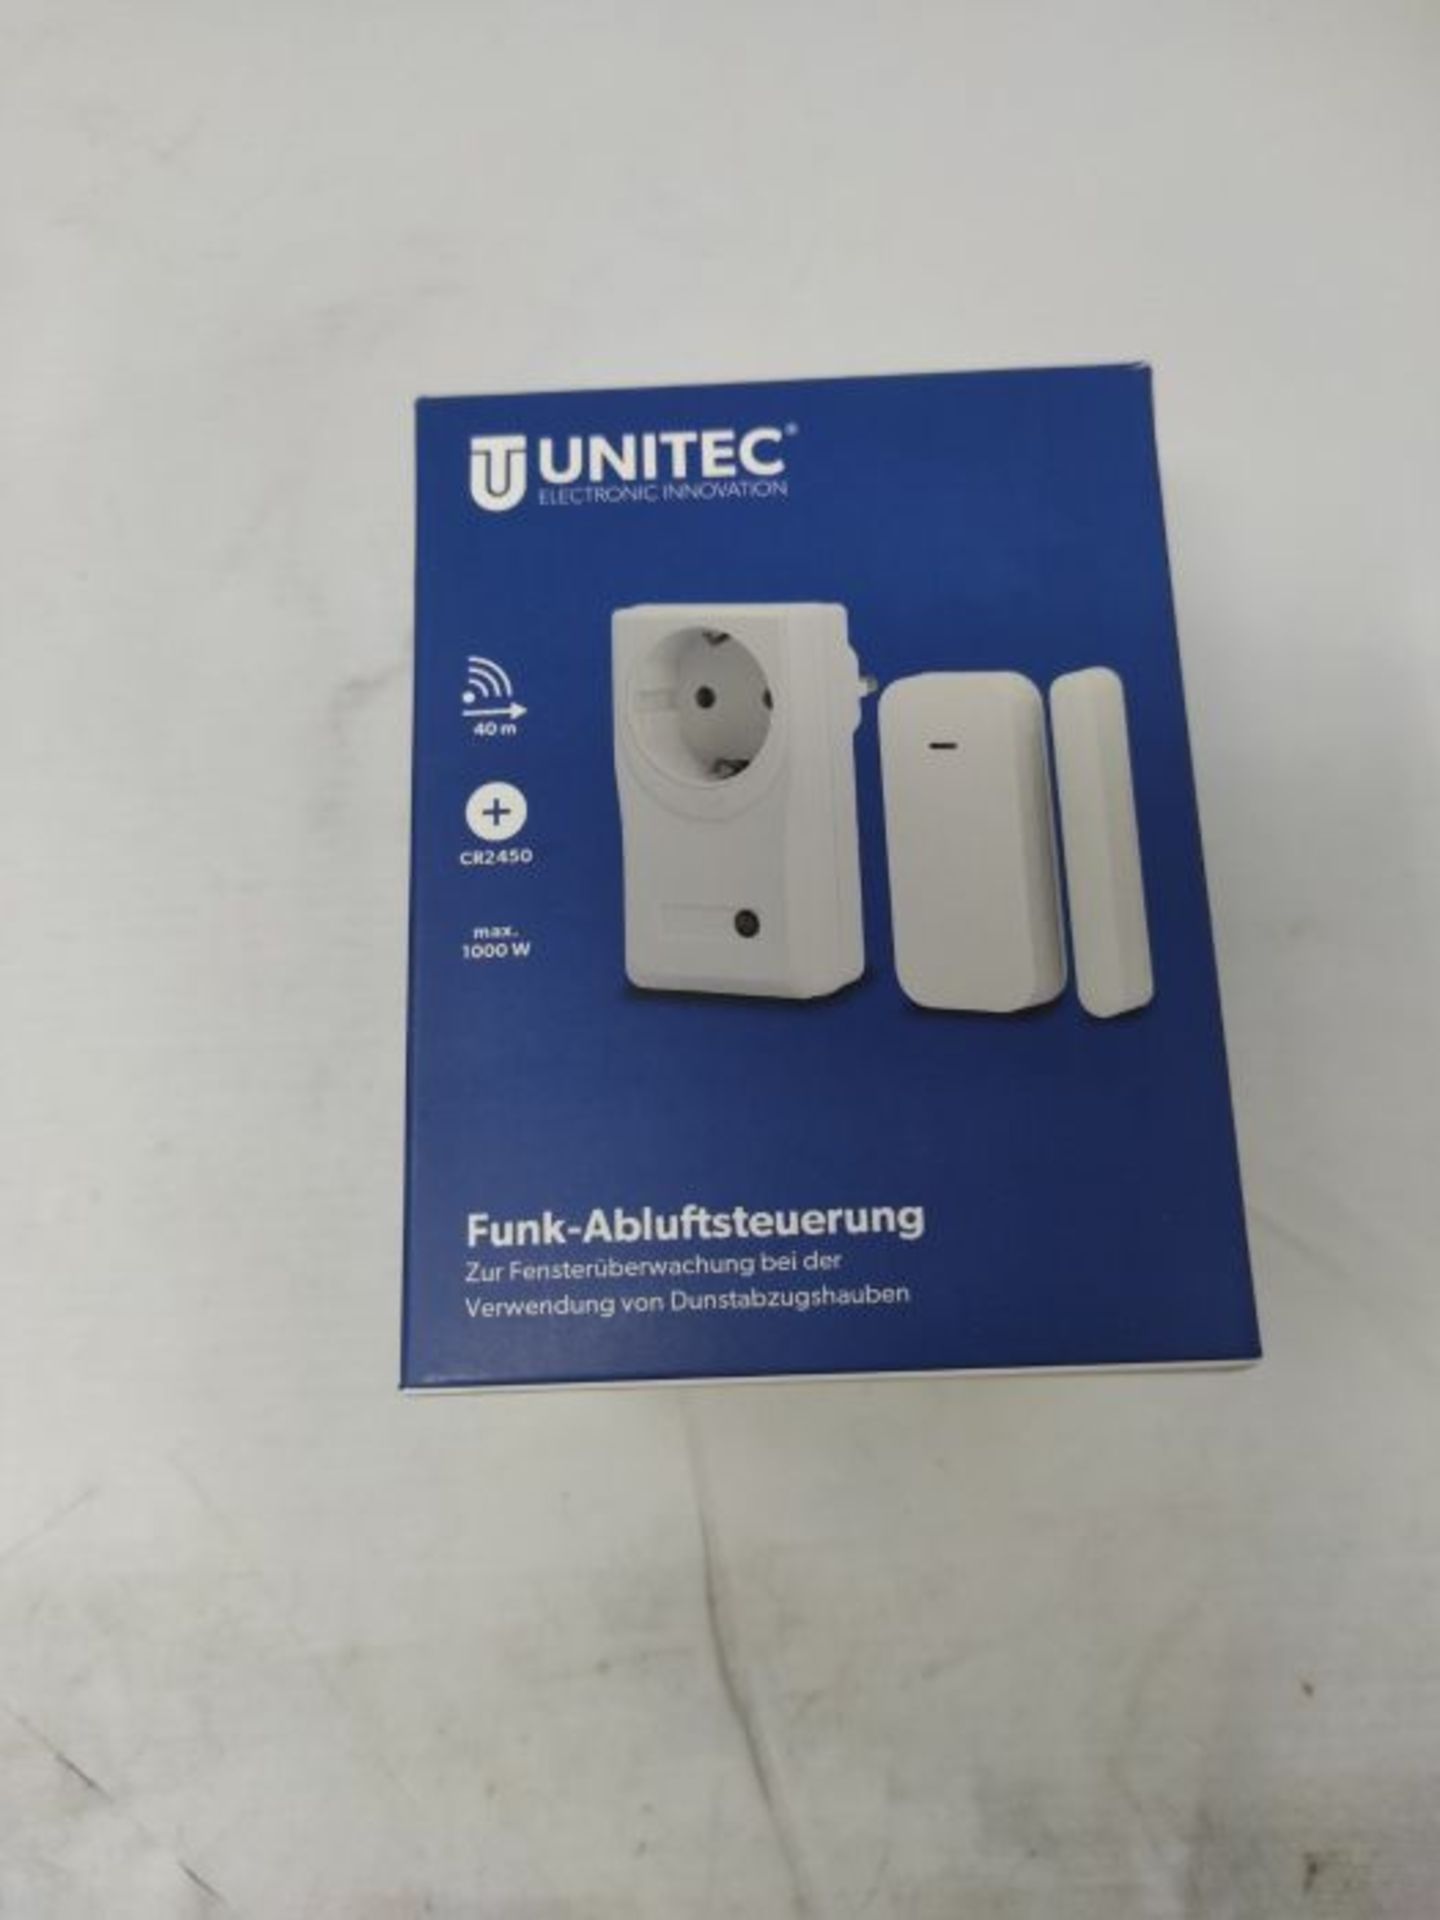 UNITEC Funk-Abluftsteuerung mit Fenster-Kontaktschalter und Magnetkontakt | Funk-Steck